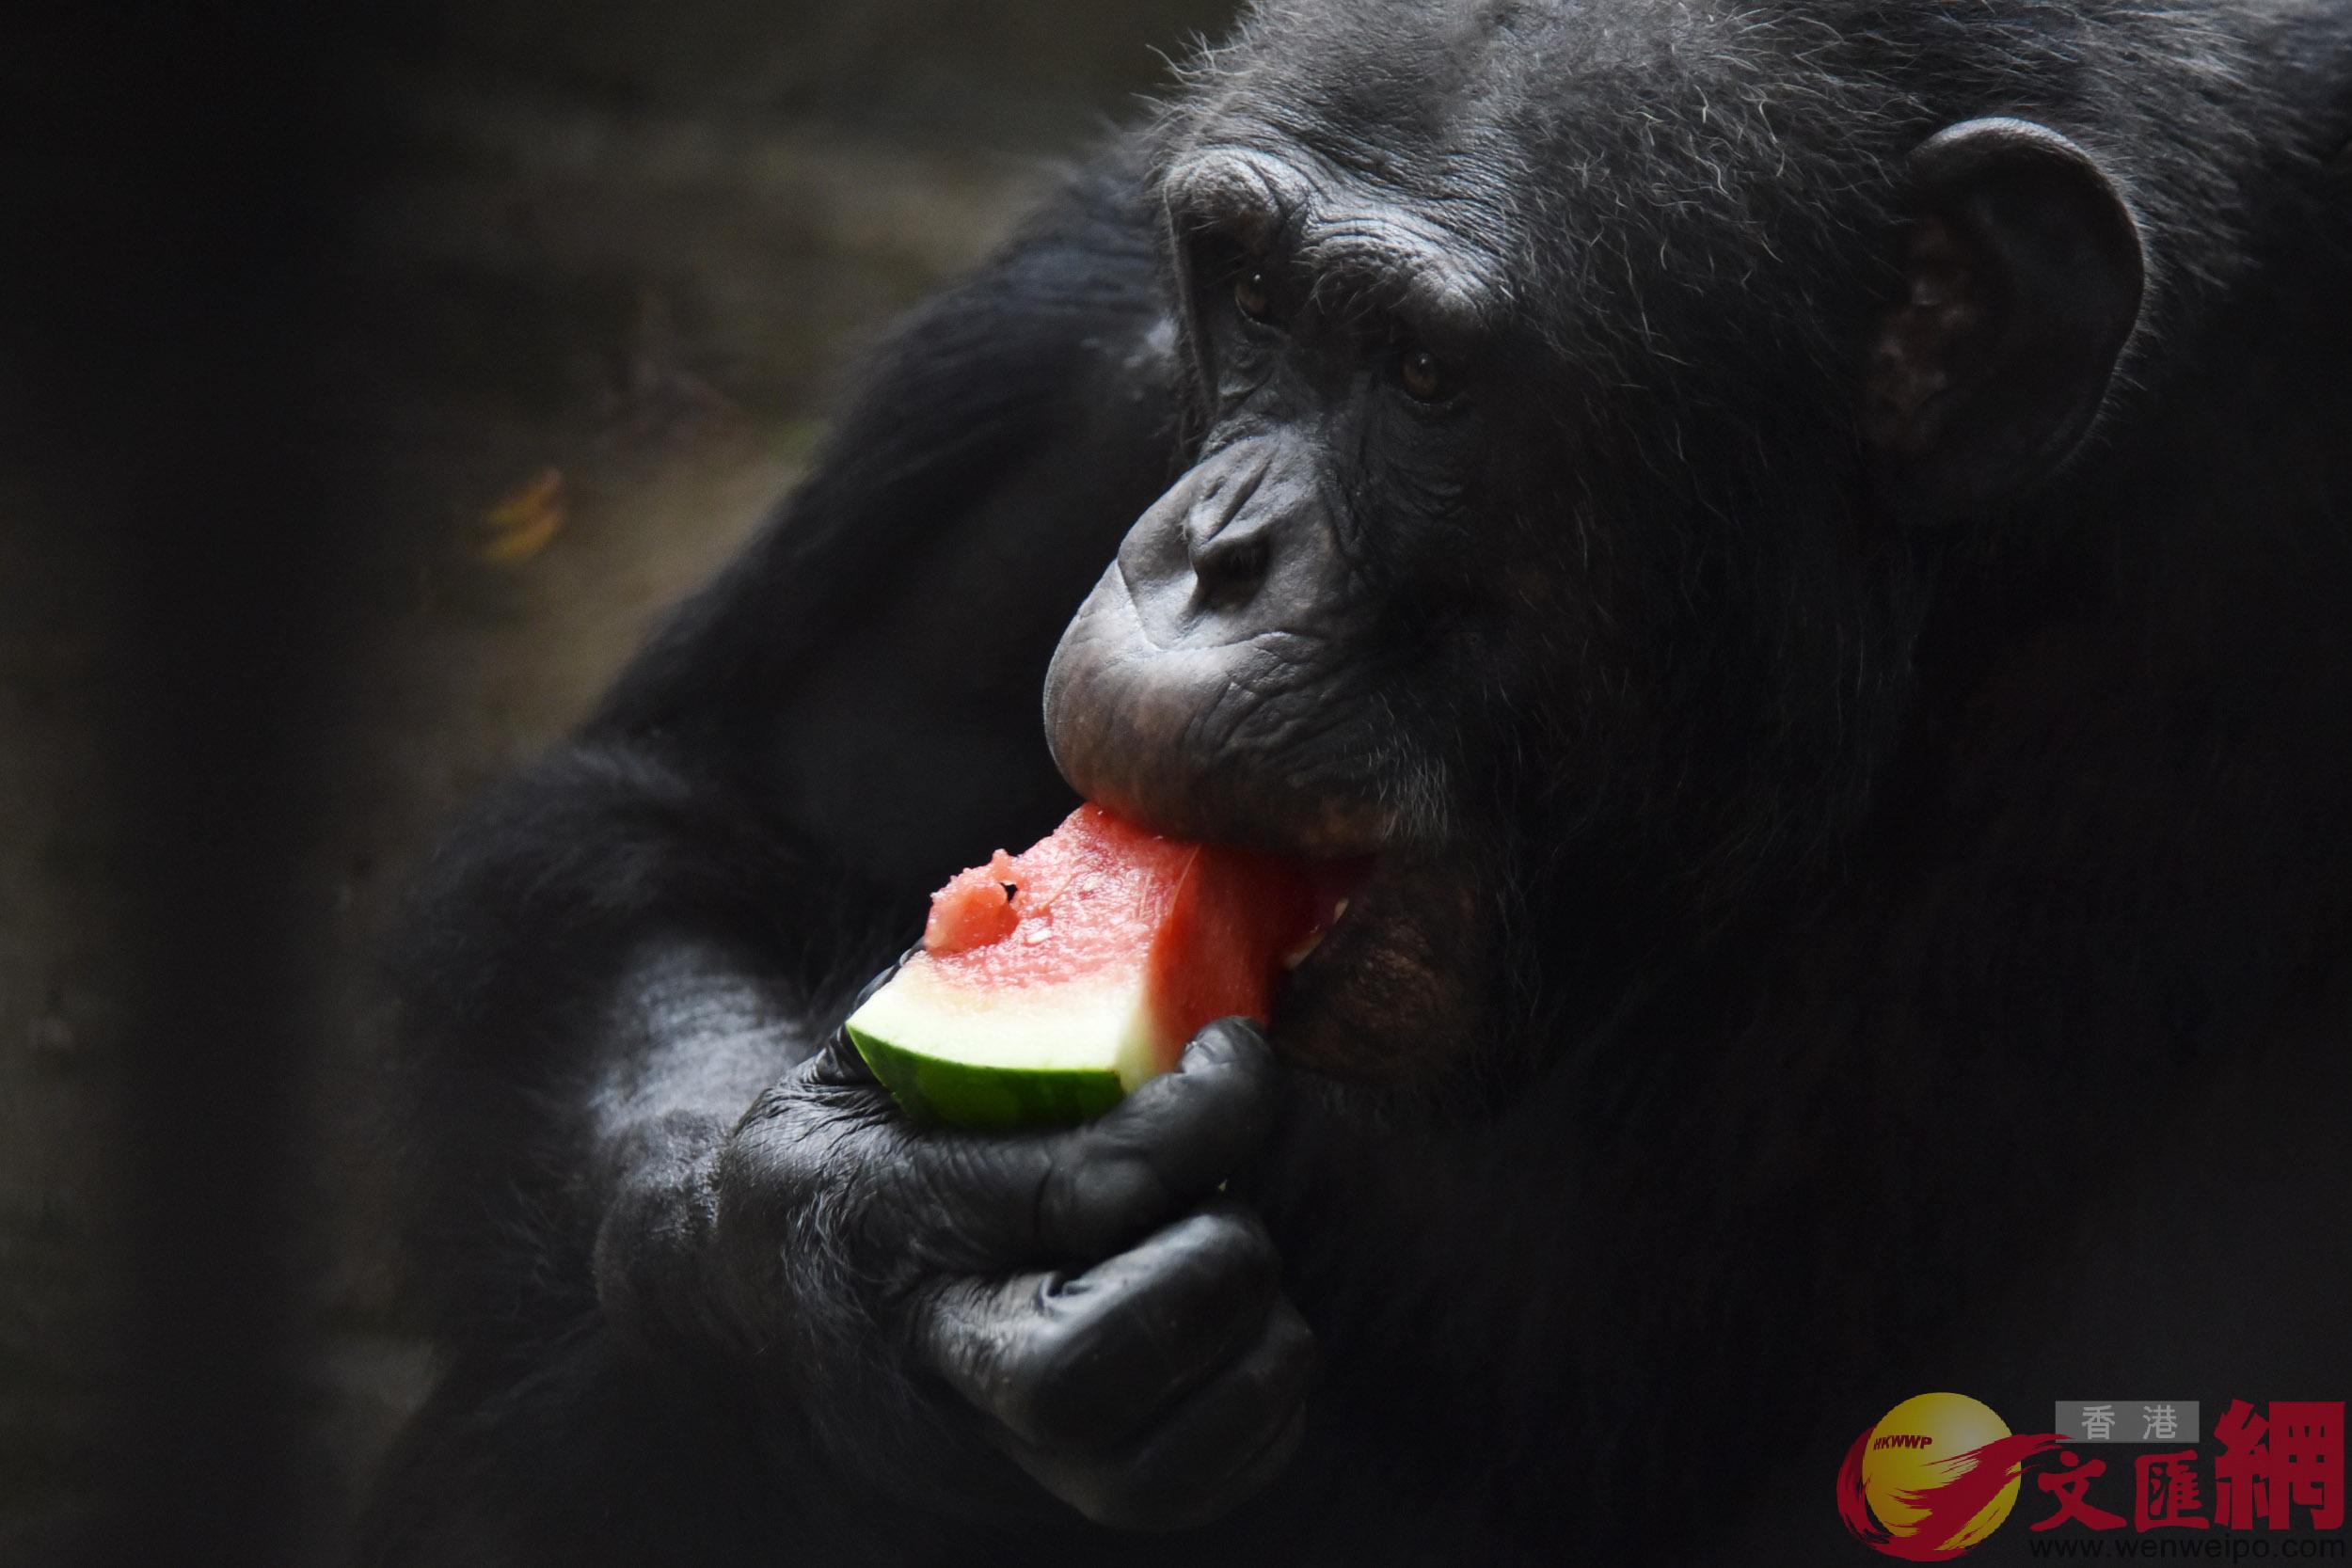 黑猩猩吃著爽口又清甜的西瓜 ]記者 郭若溪攝^